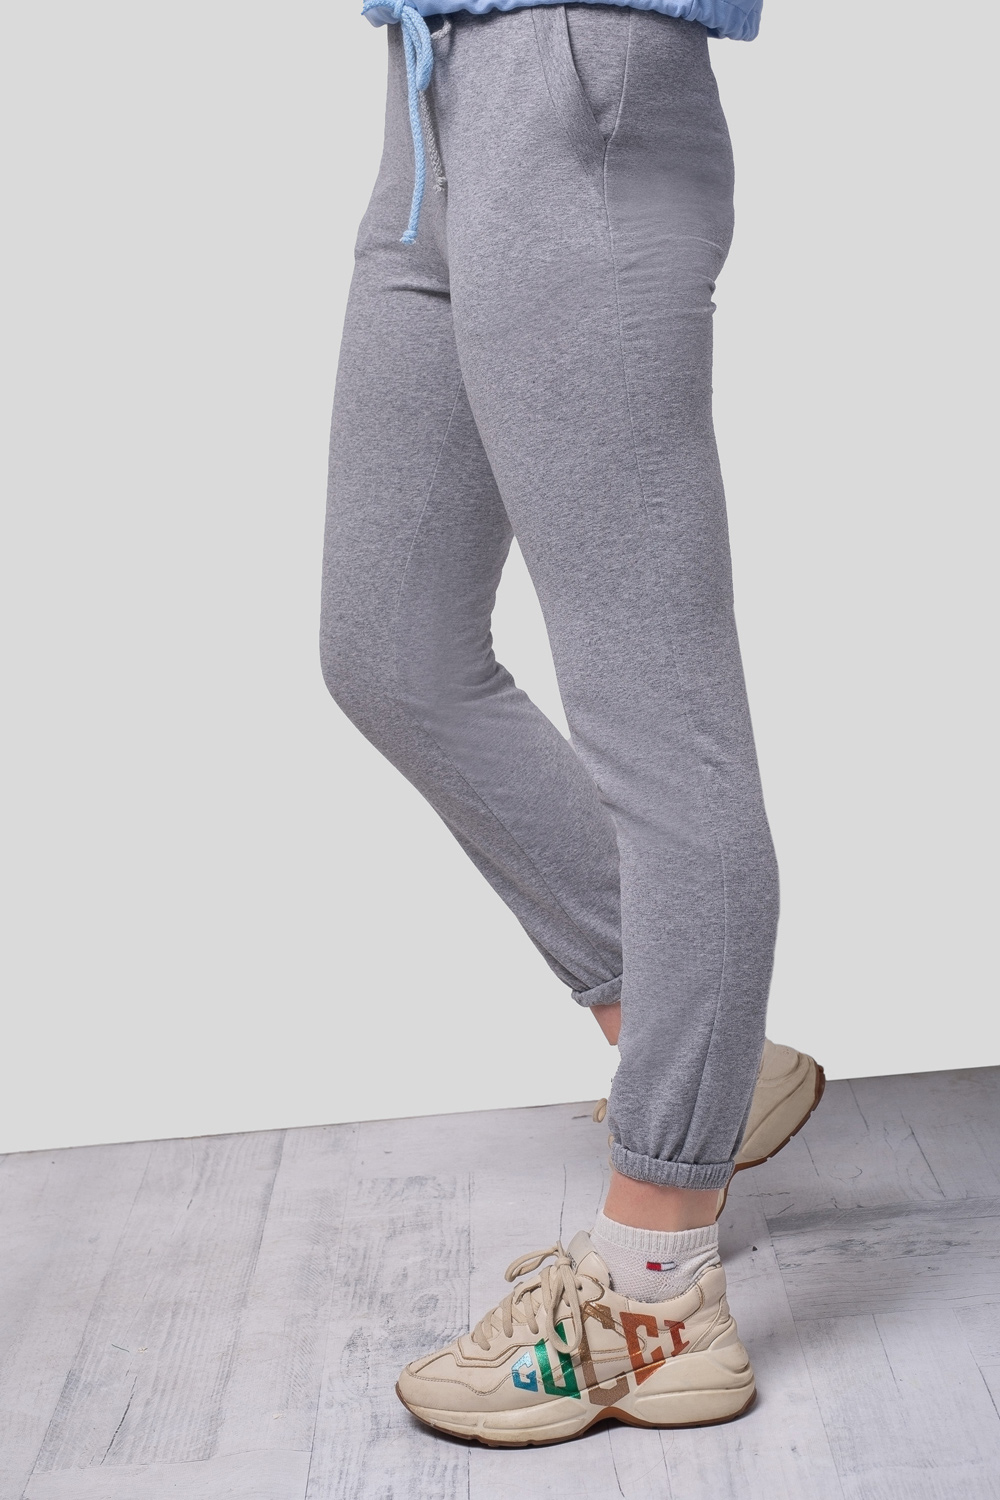 Knit Gray Pants